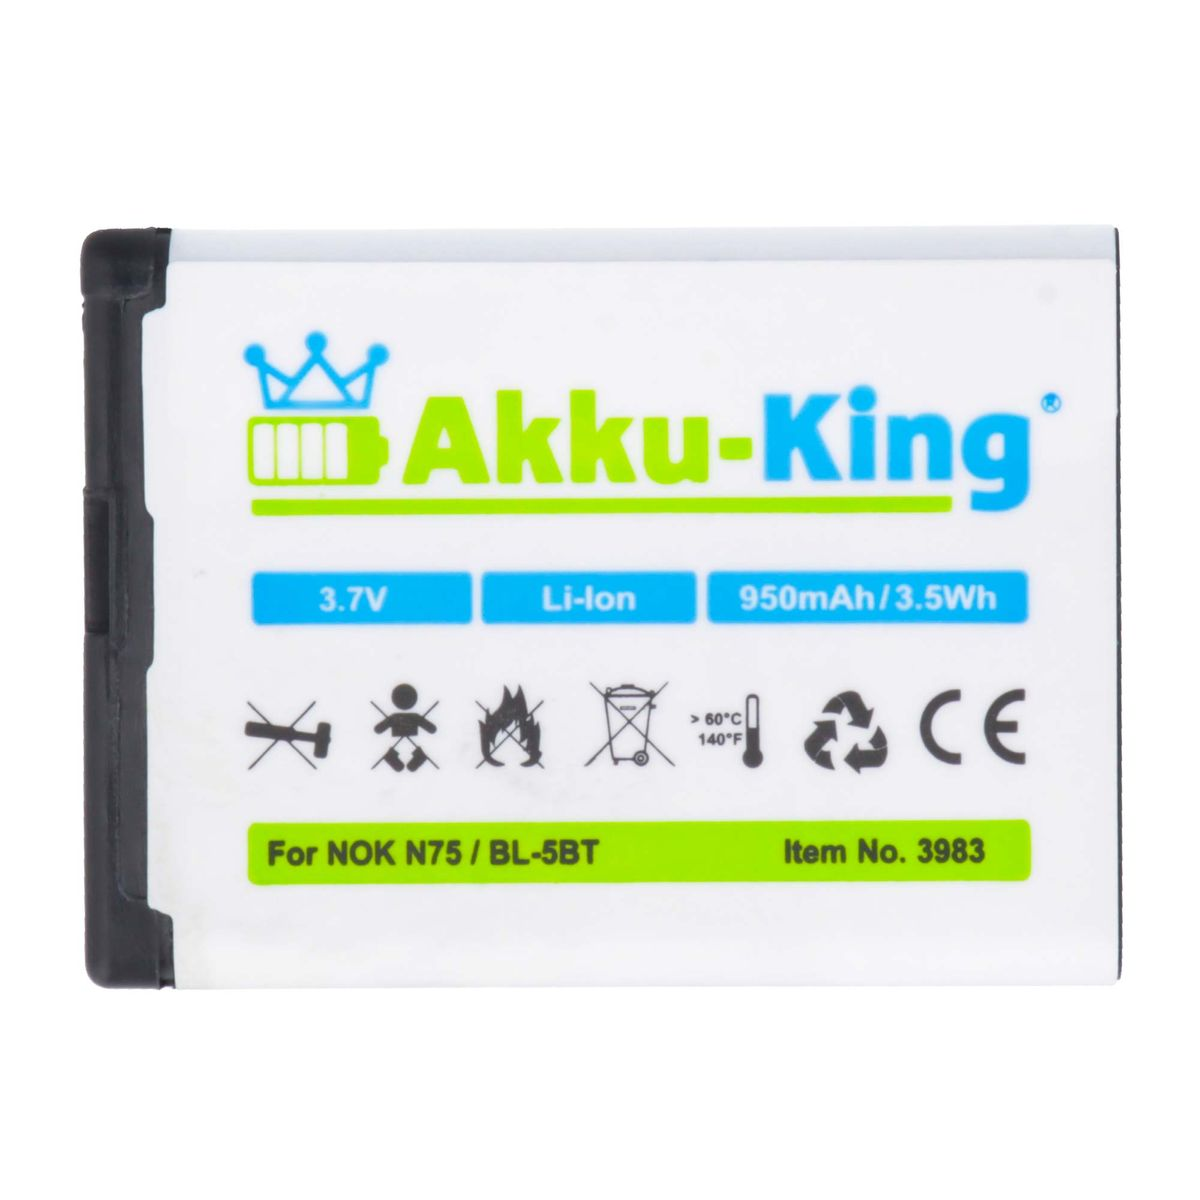 Nokia Li-Ion AKKU-KING Handy-Akku, BL-5BT kompatibel 950mAh Akku Volt, mit 3.7